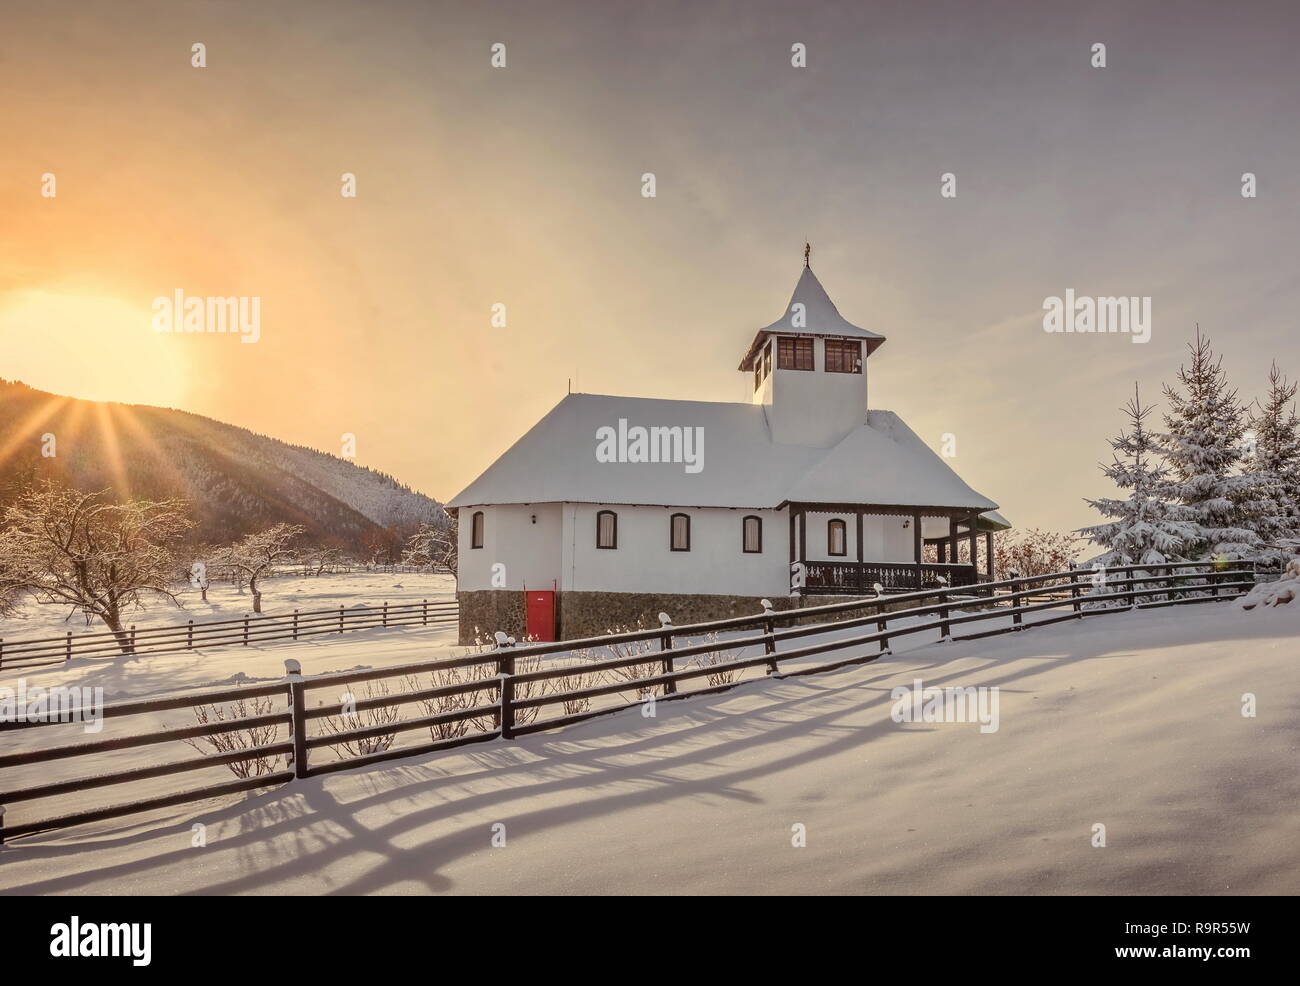 Son Schitul, Simon Brasov, Roumanie - paysage d'hiver au lever du soleil de son église et grange traditionnelle Banque D'Images